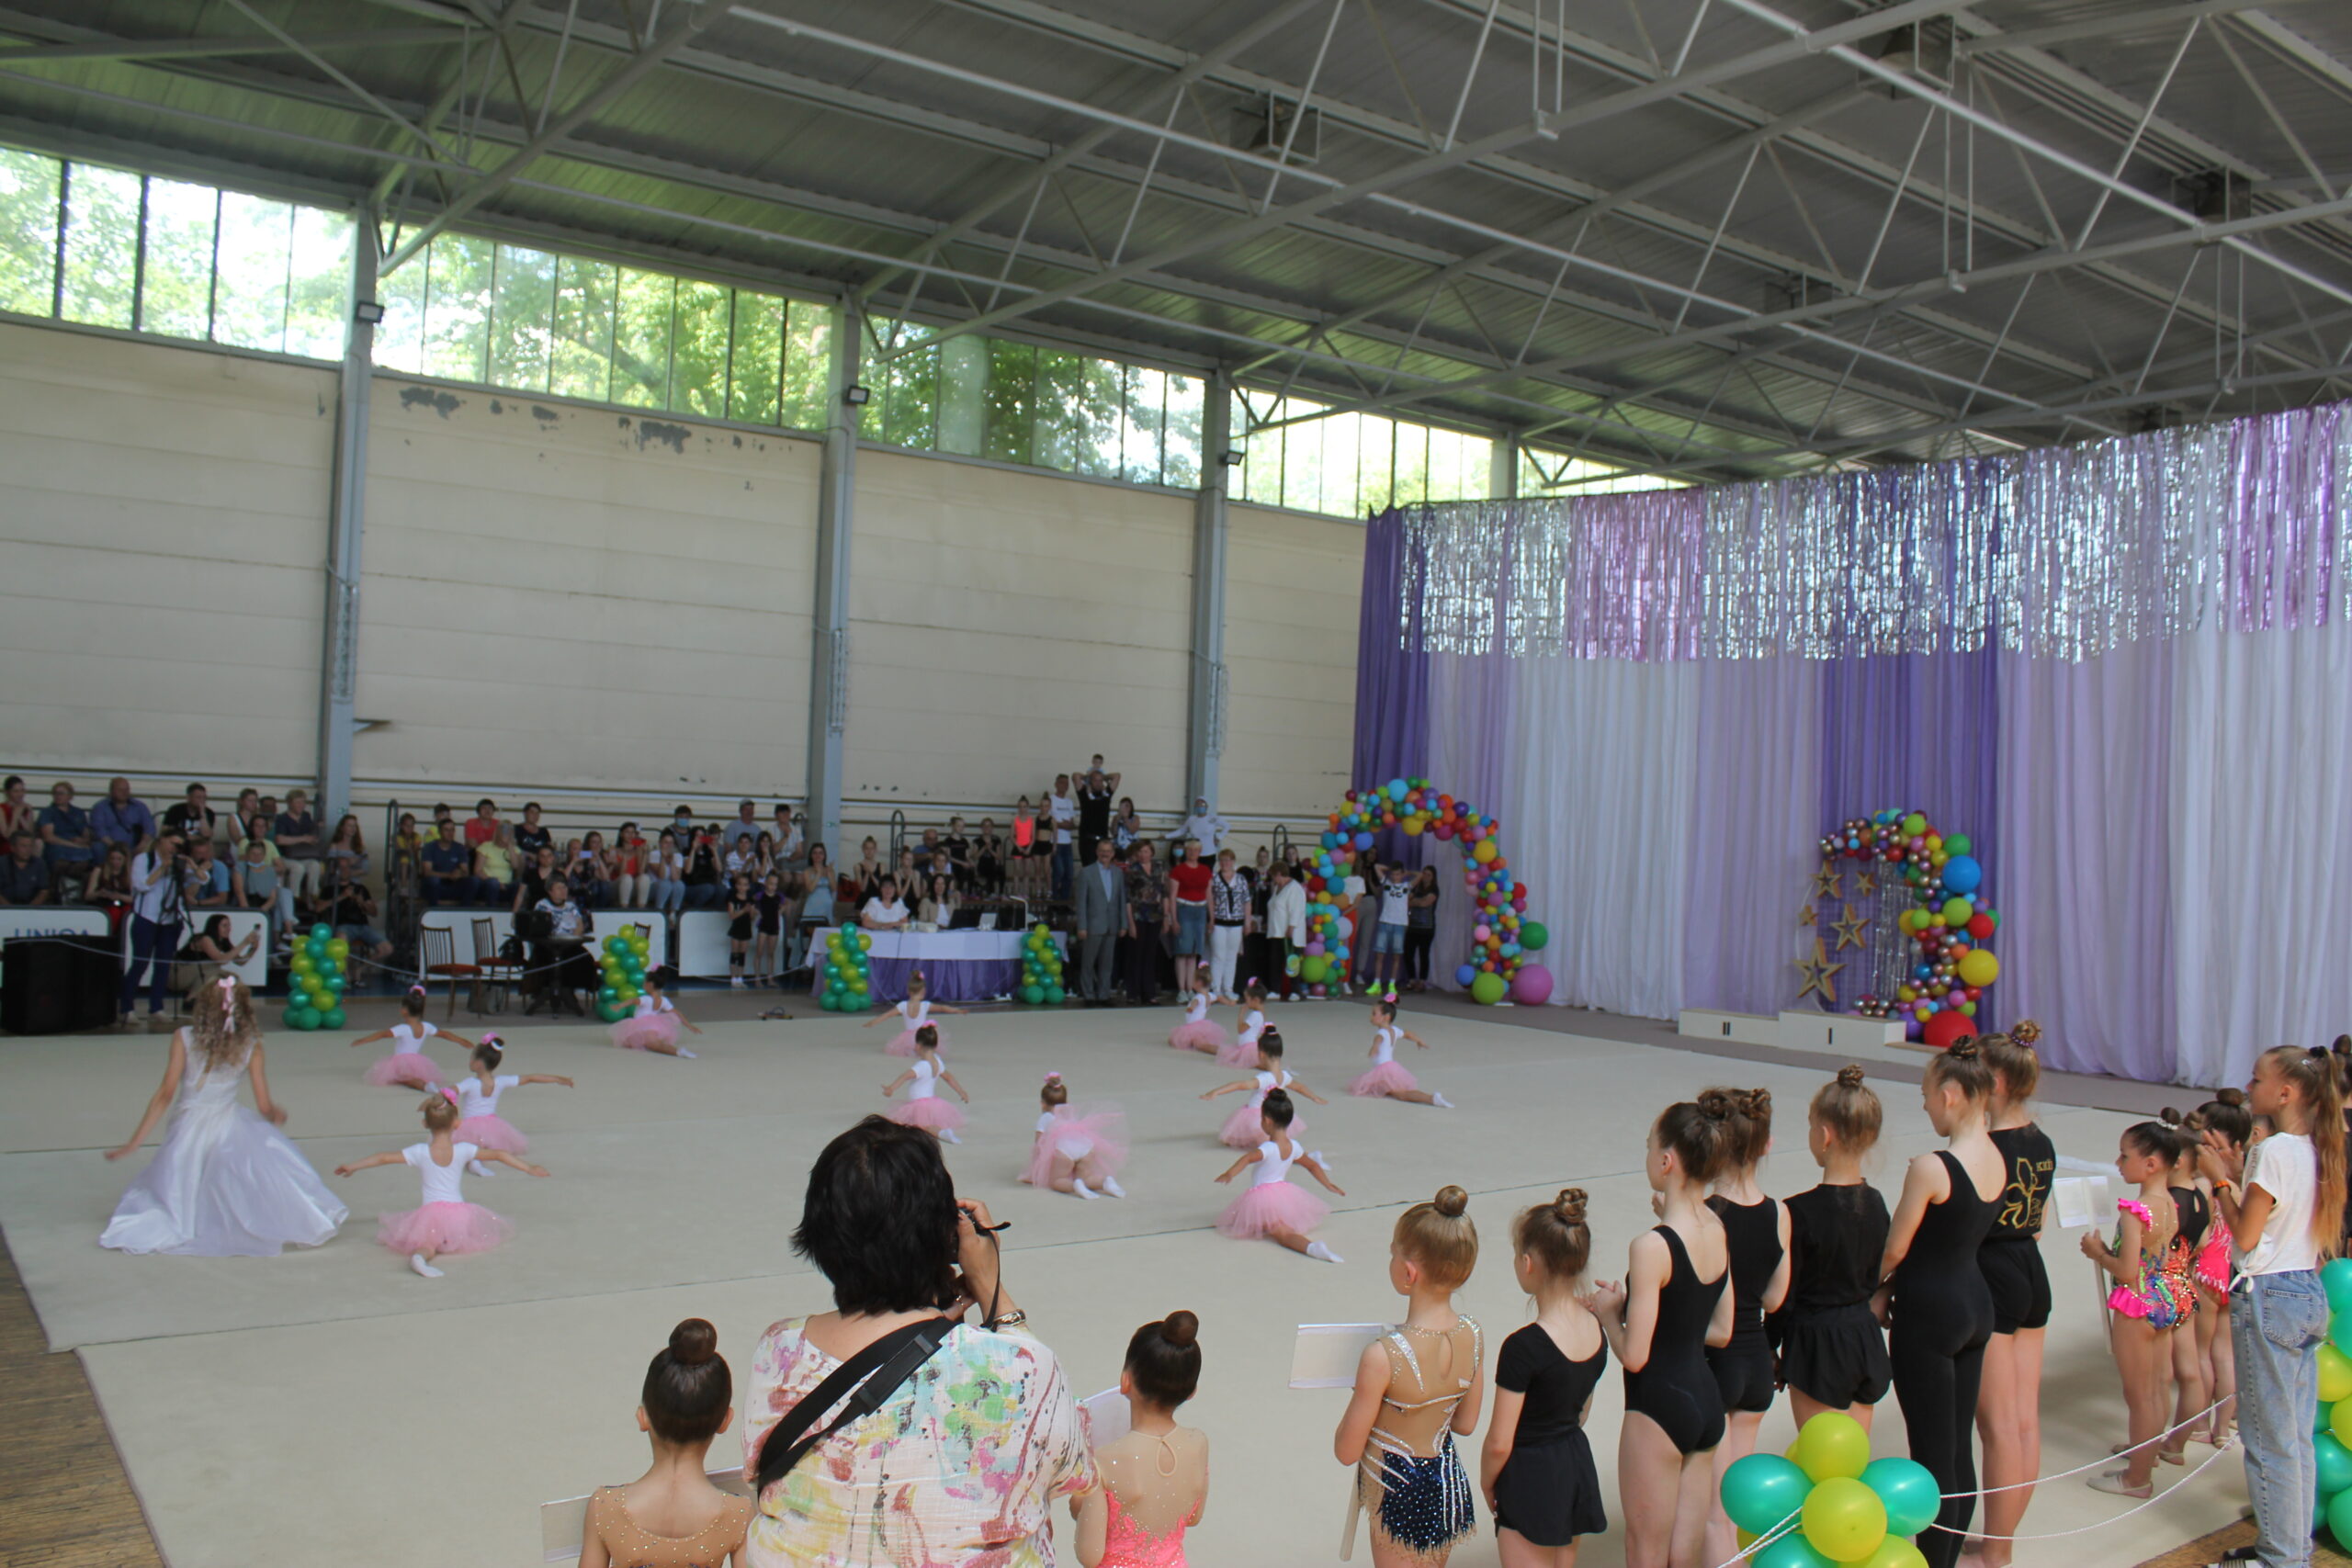 В Измаиле стартовал турнир по художественной гимнастике, на который приехали и участники из ближнего зарубежья.